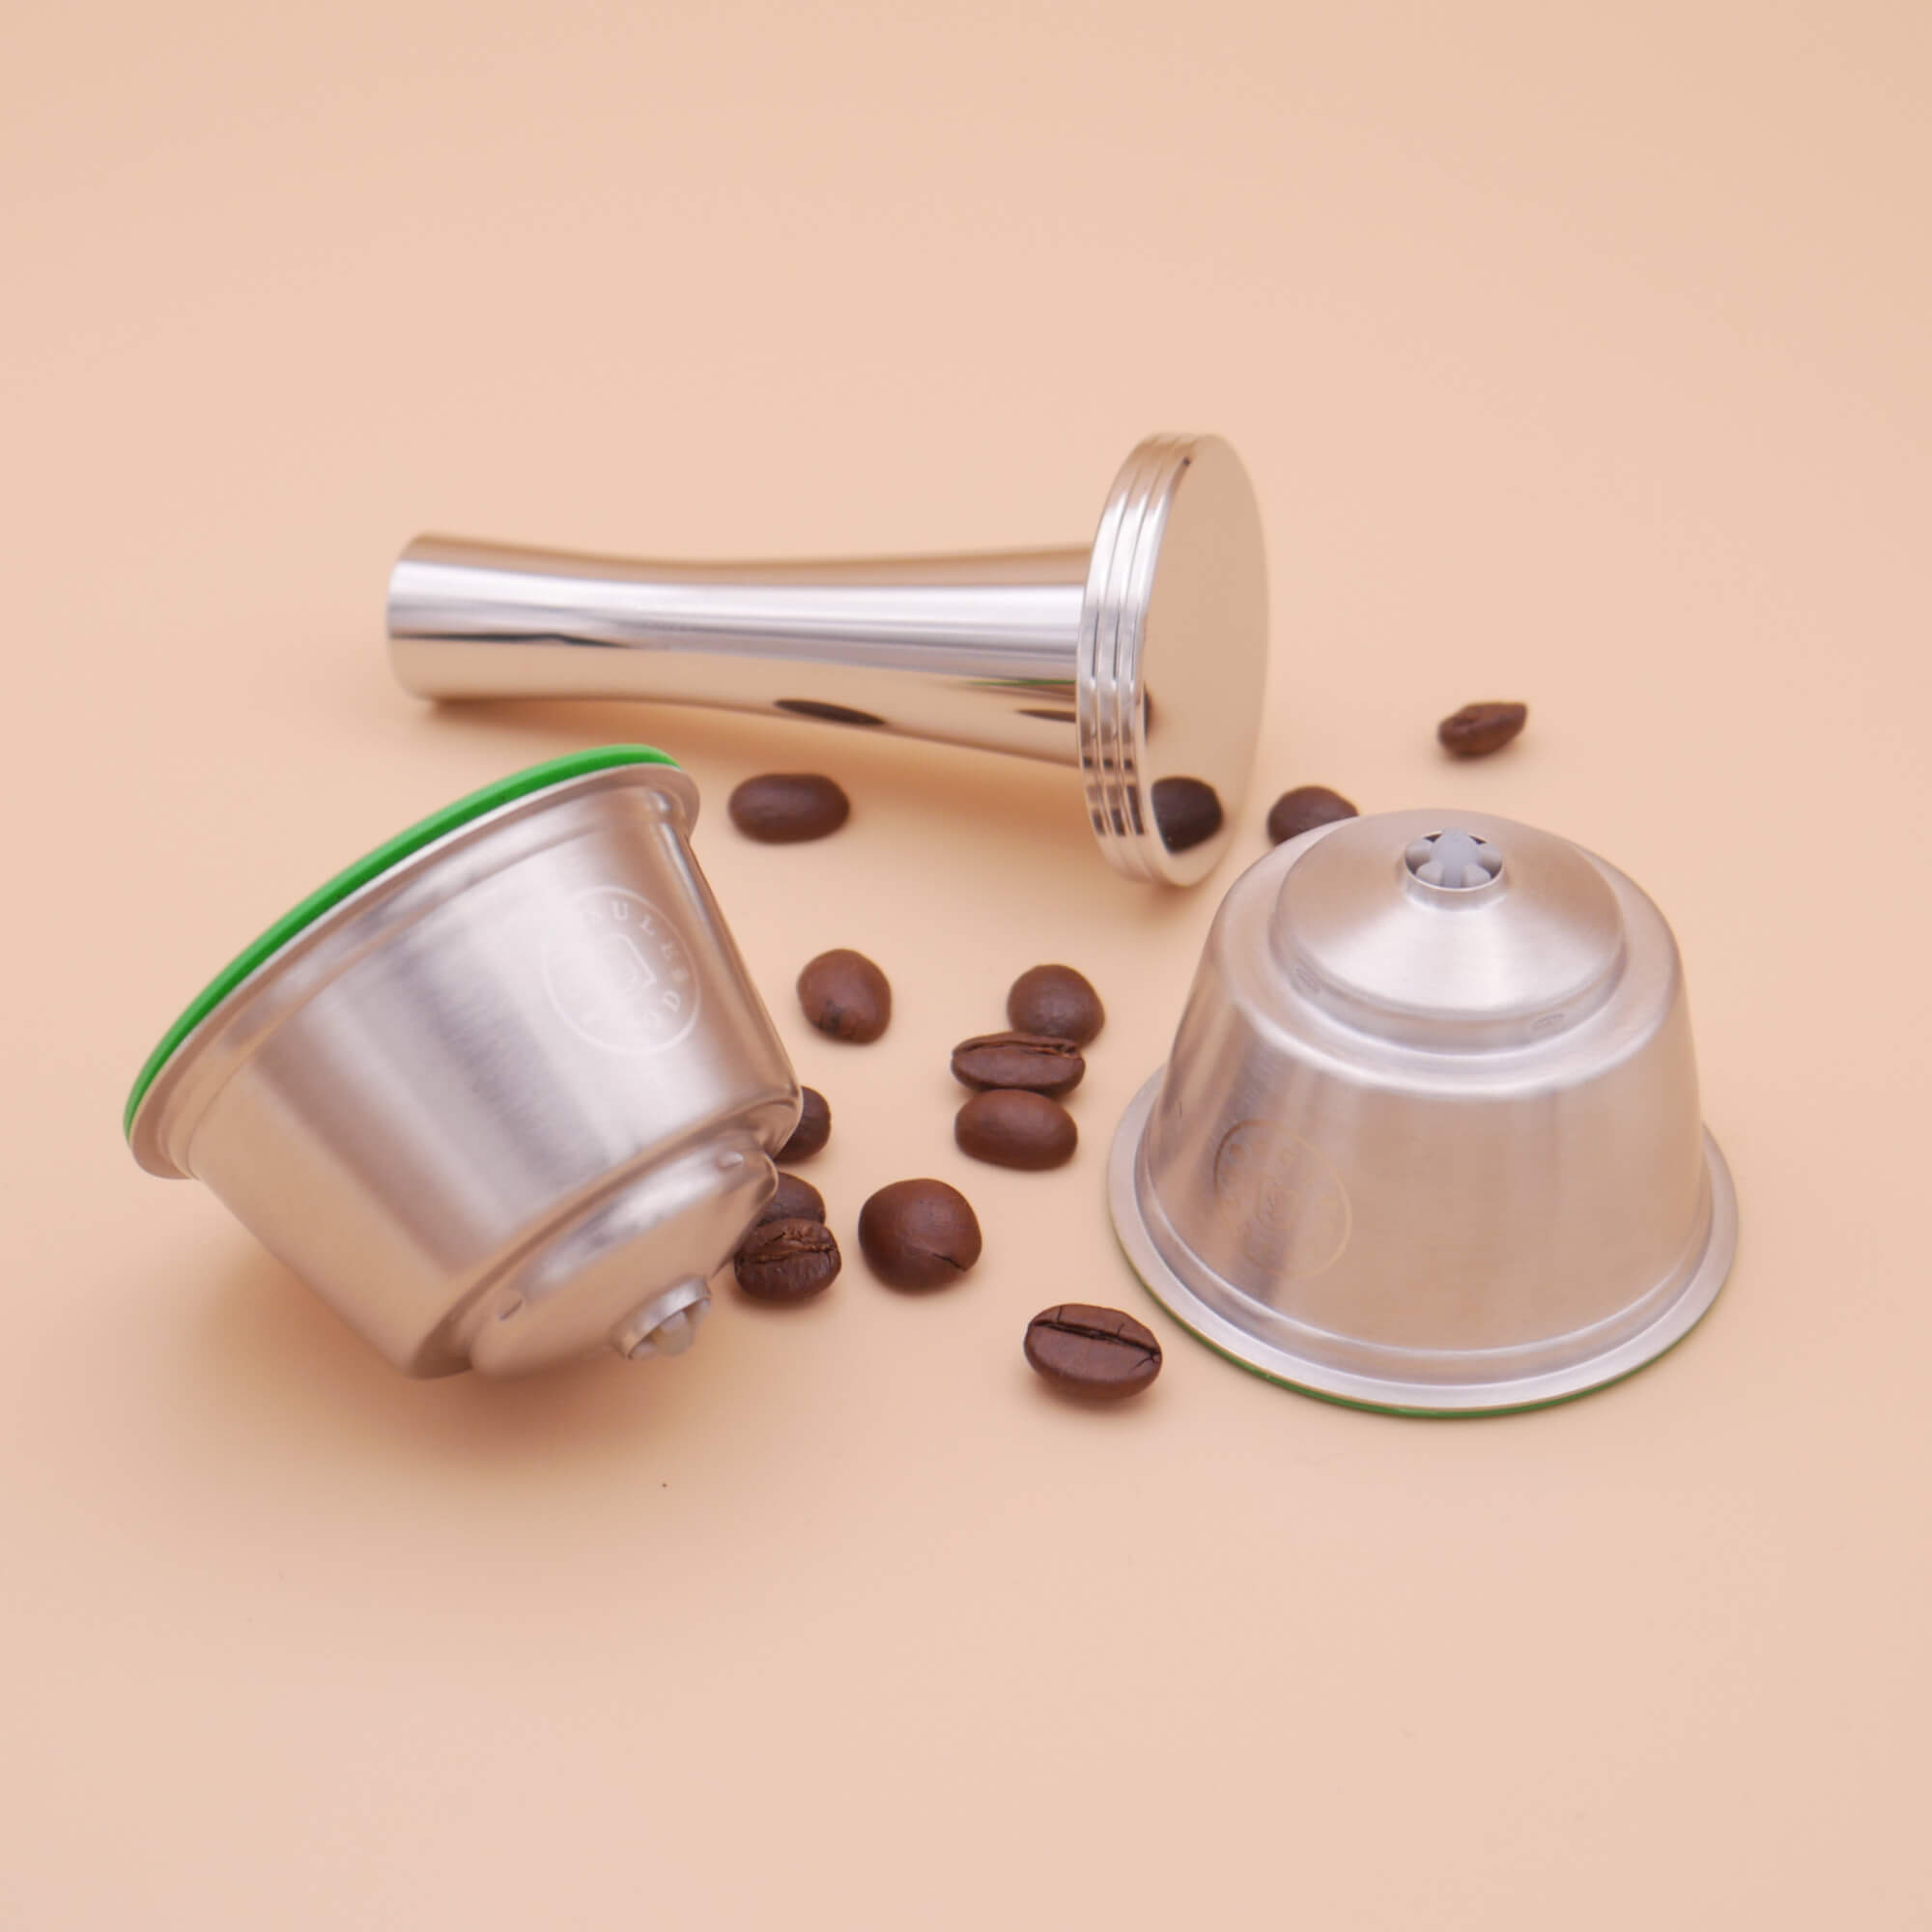 Capsule Café inox Dolce Gusto® Compatible - CAPSULE POD